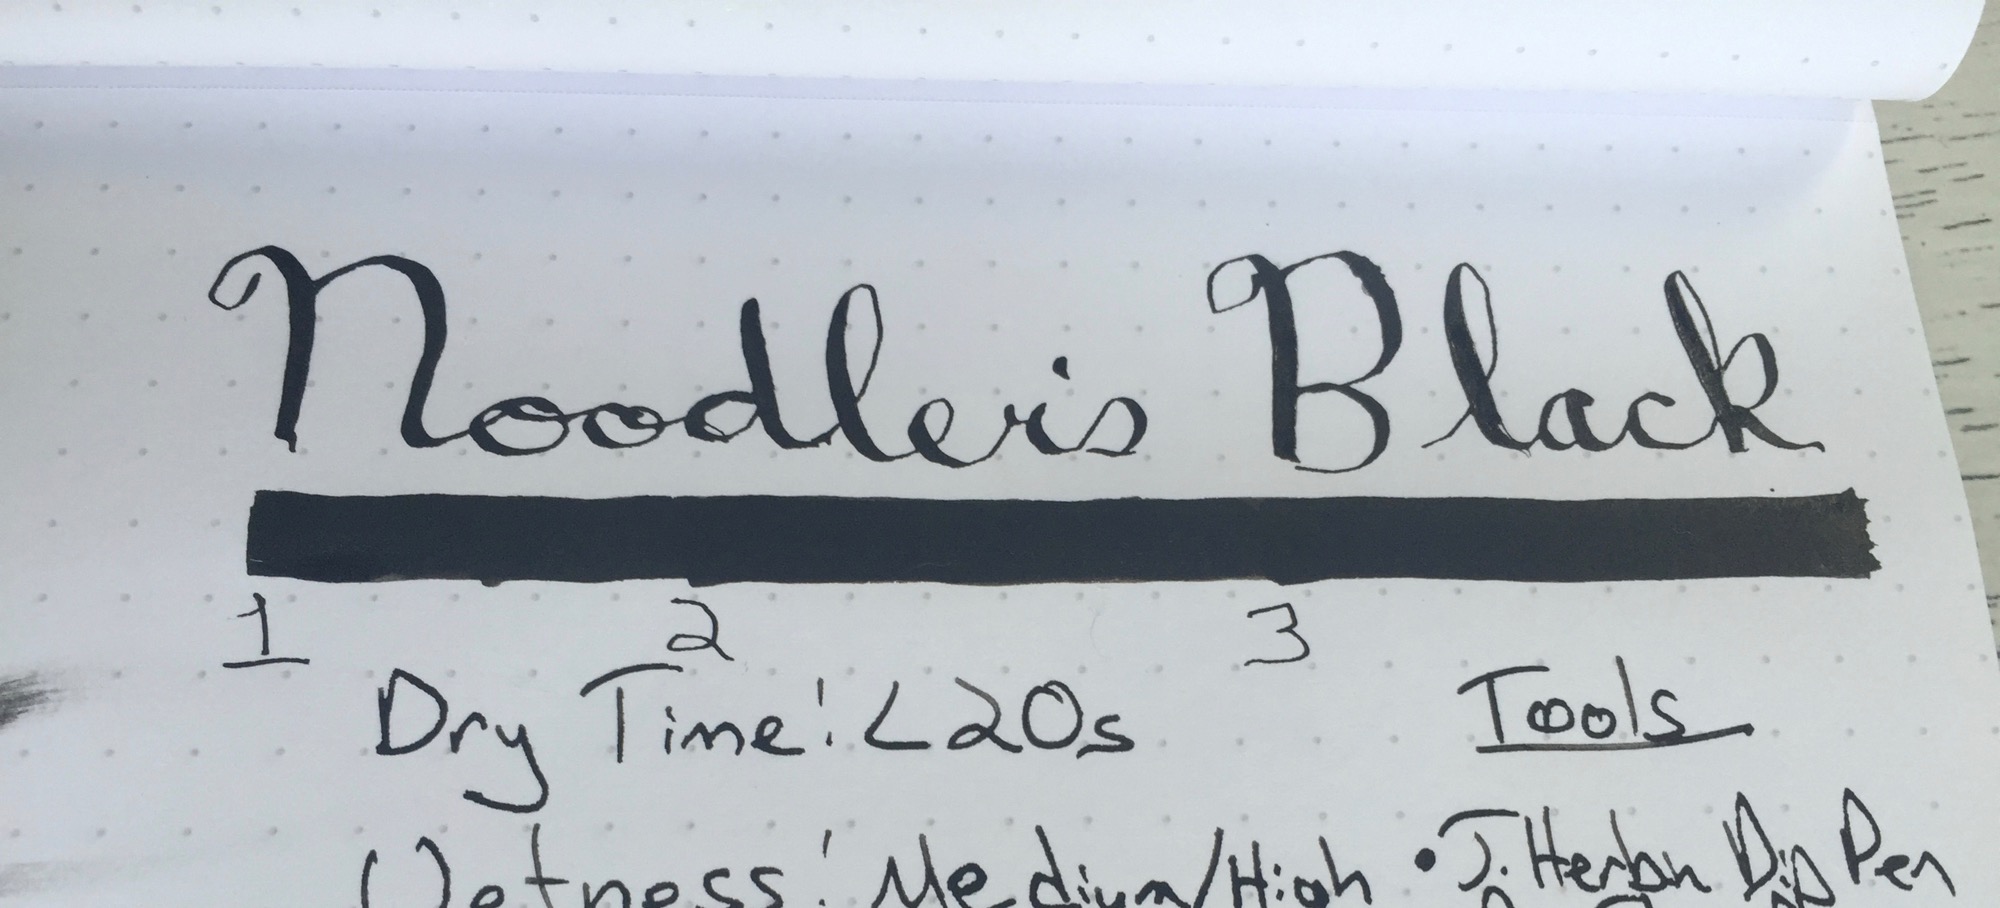 Noodler's Black Ink Review — A Better Desk